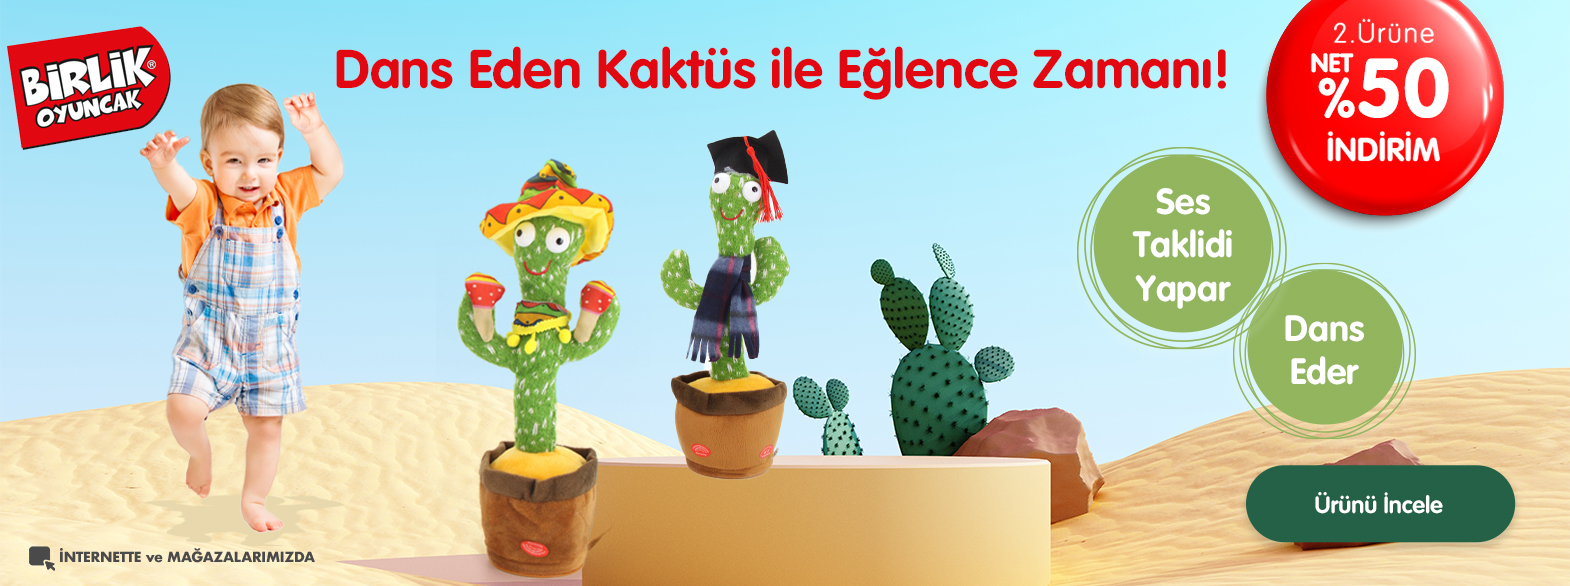 birlik-kaktus-banner.jpg